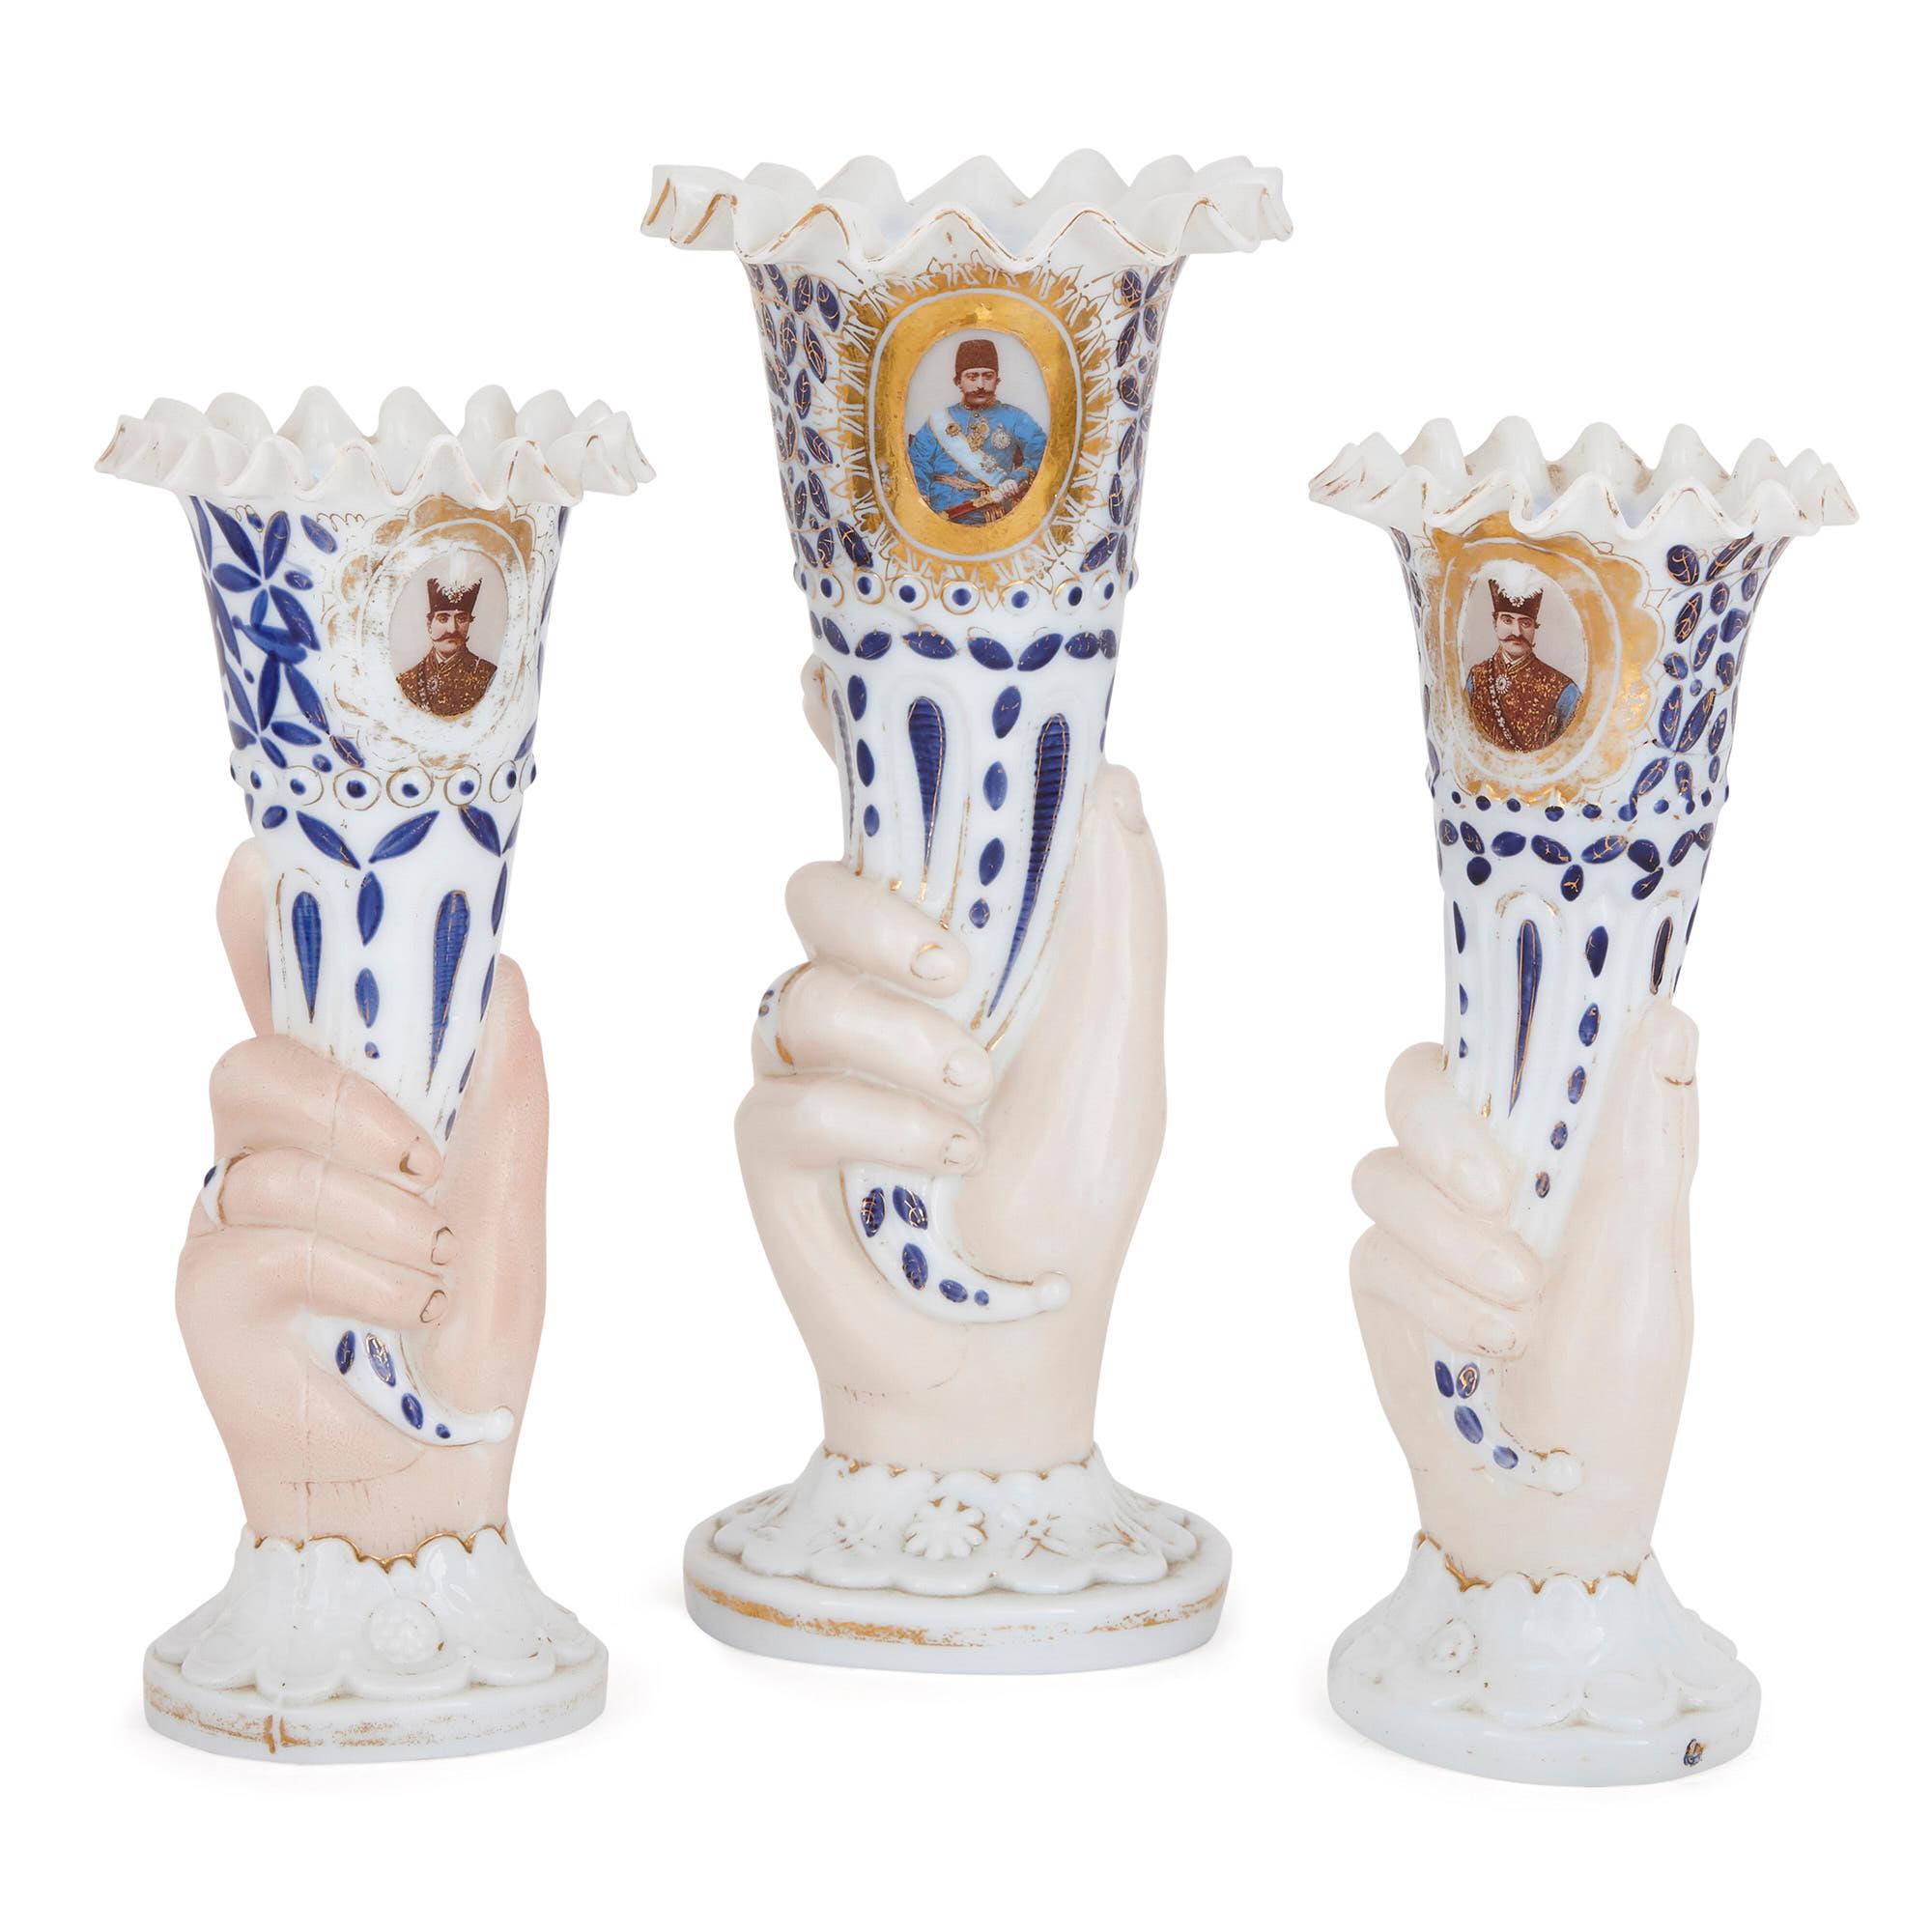 Diese wunderbare Sammlung von böhmischen Glasobjekten wurde im späten 19. Jahrhundert für den persischen Markt geschaffen. Das Set - bestehend aus drei Vasen, einem Huqqa-Sockel und einem Krug - ist eine schöne Ergänzung zu einer Sammlung antiker